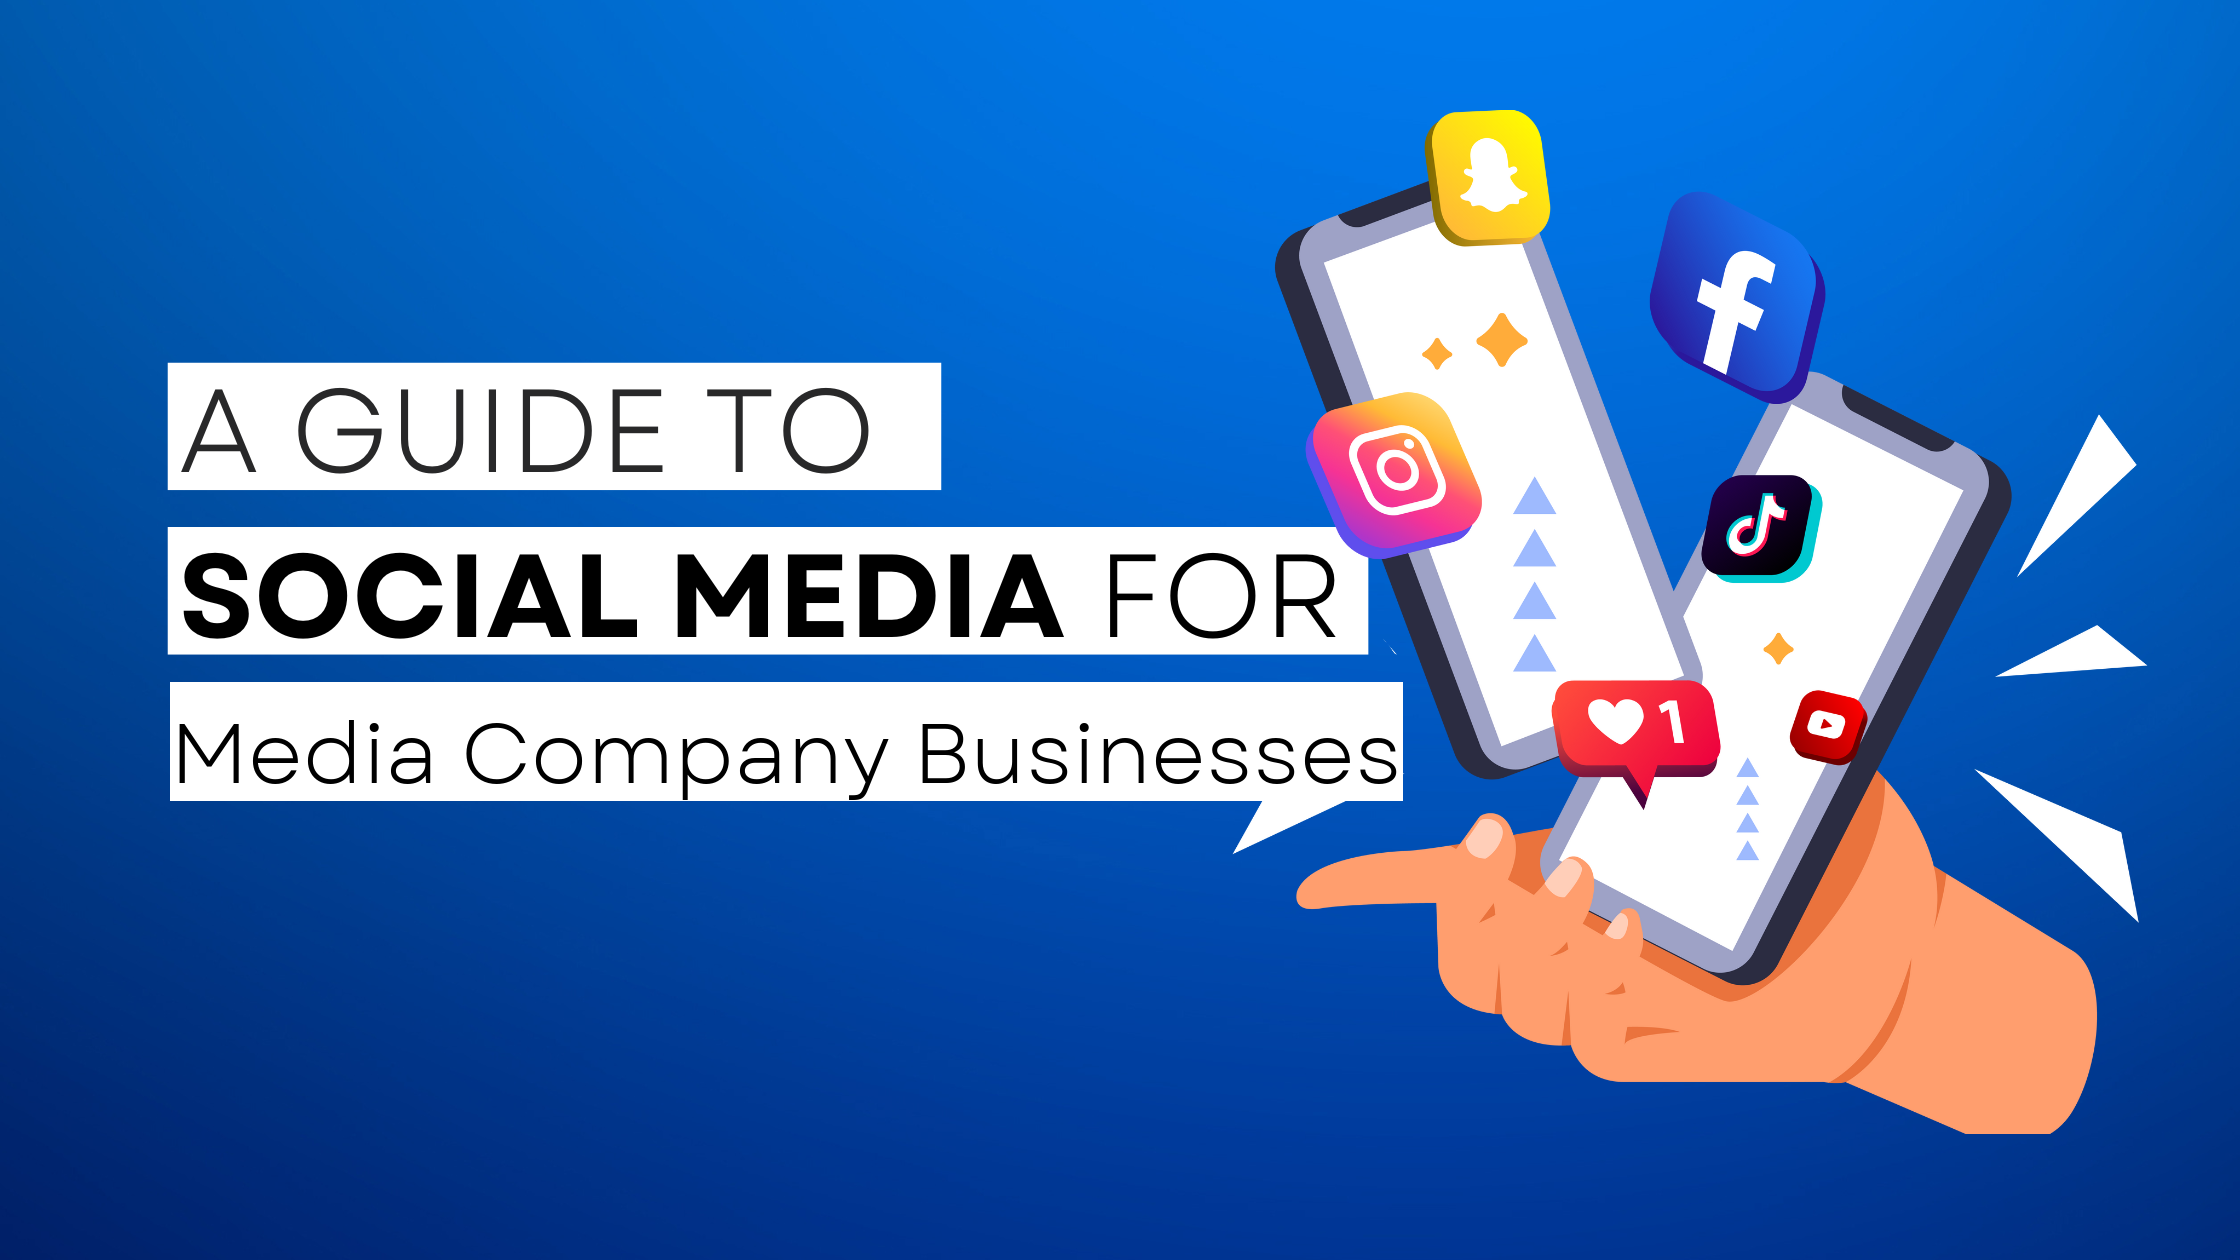 How to start Media Company on social media